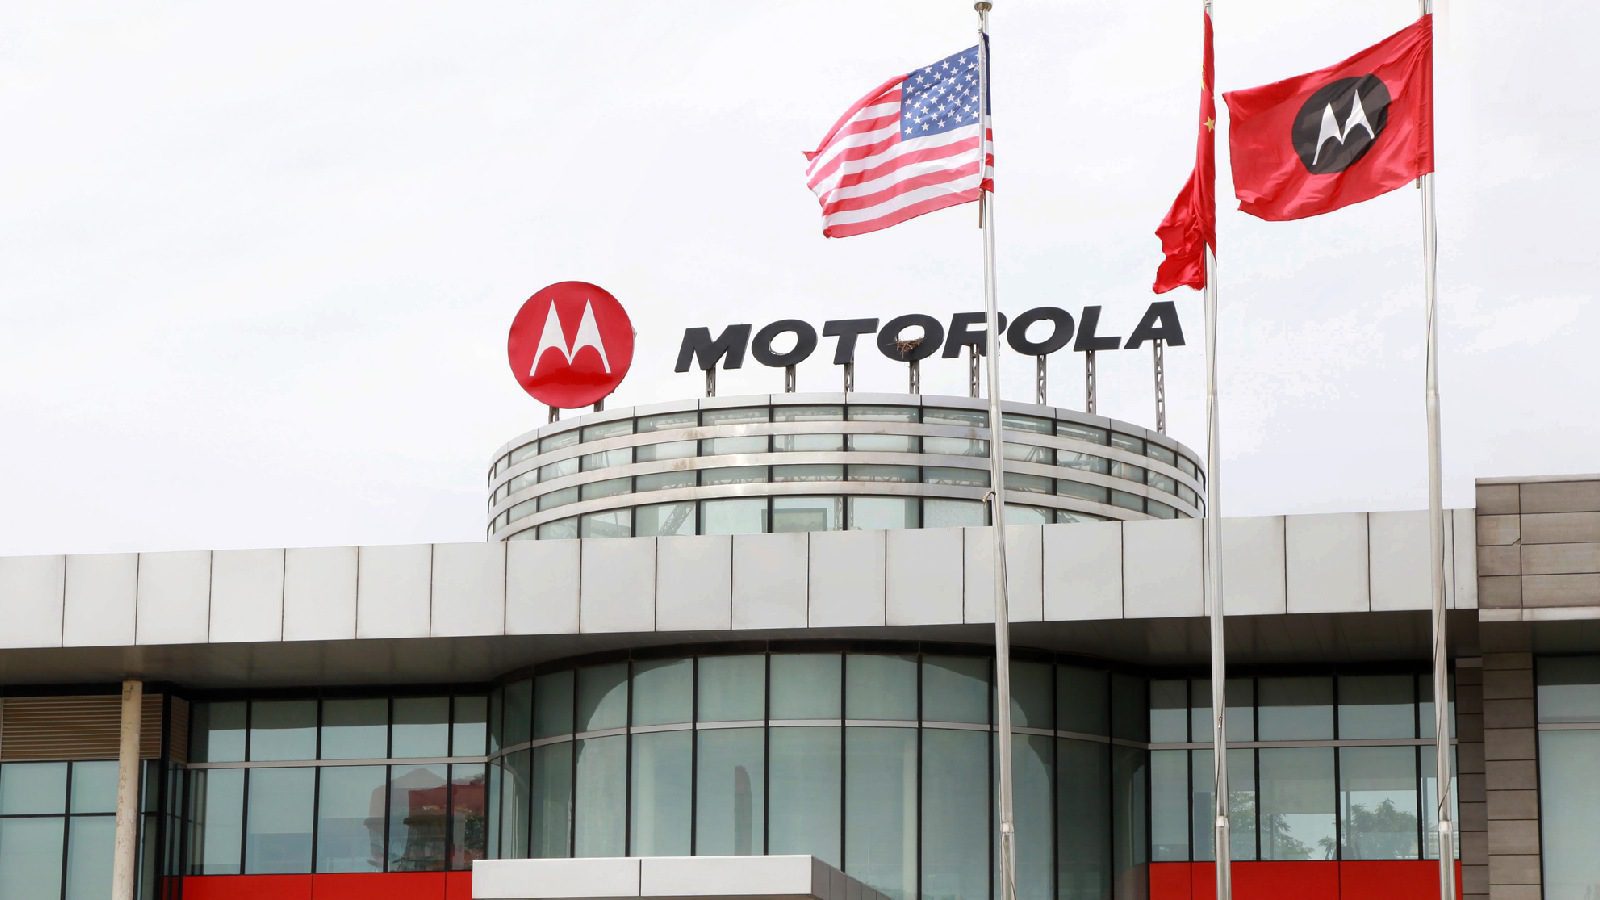 ВОИС предоставила компании Motorola патентное право на новый складной телефон